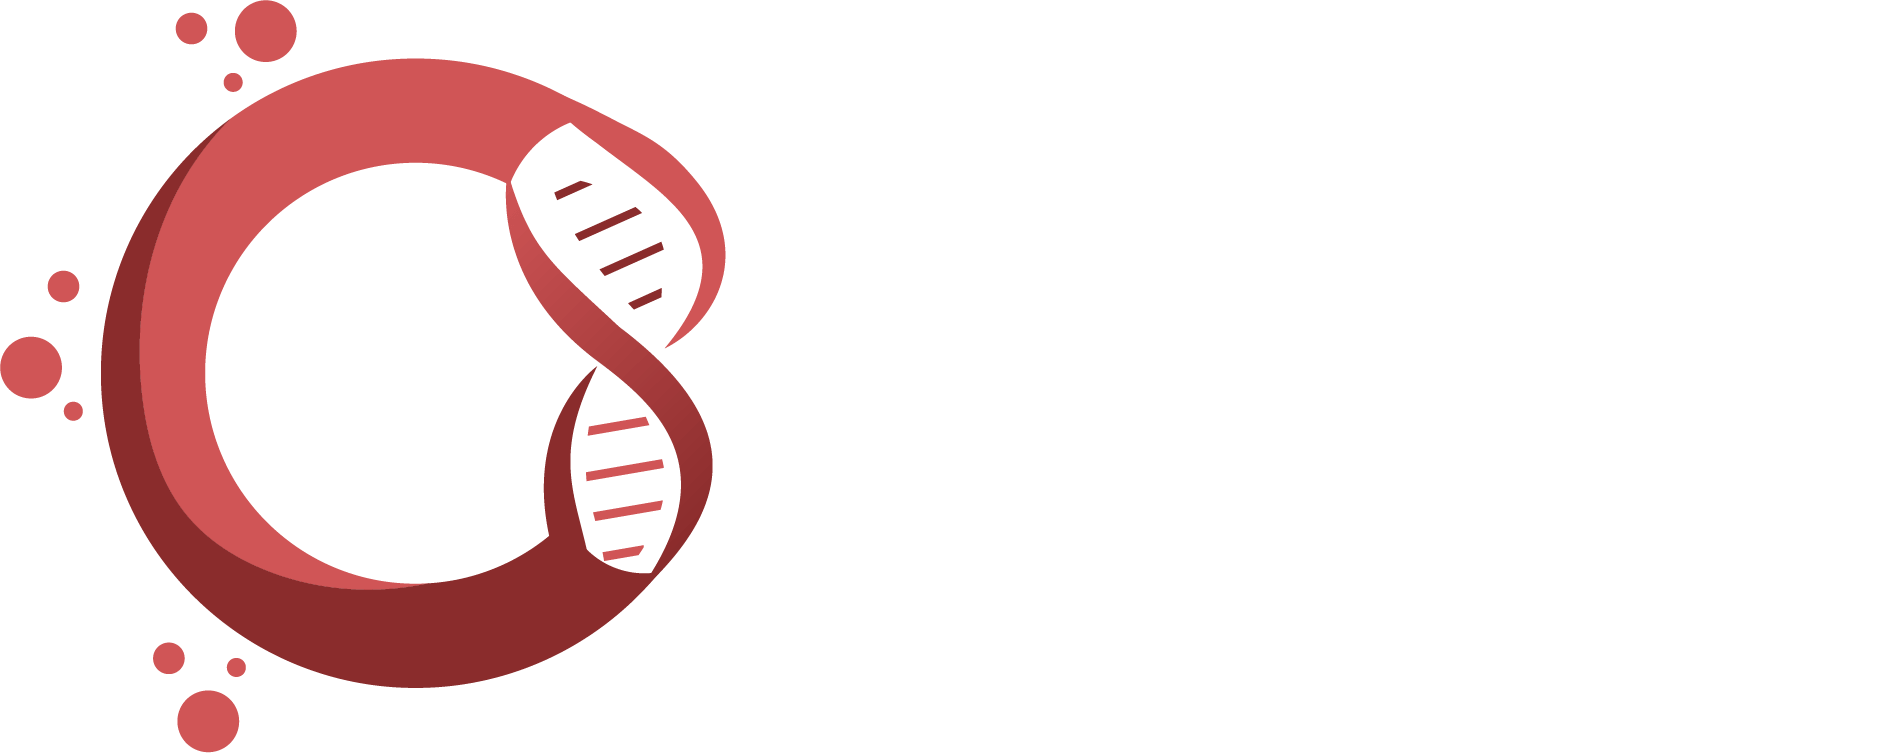 ictpatras.gr